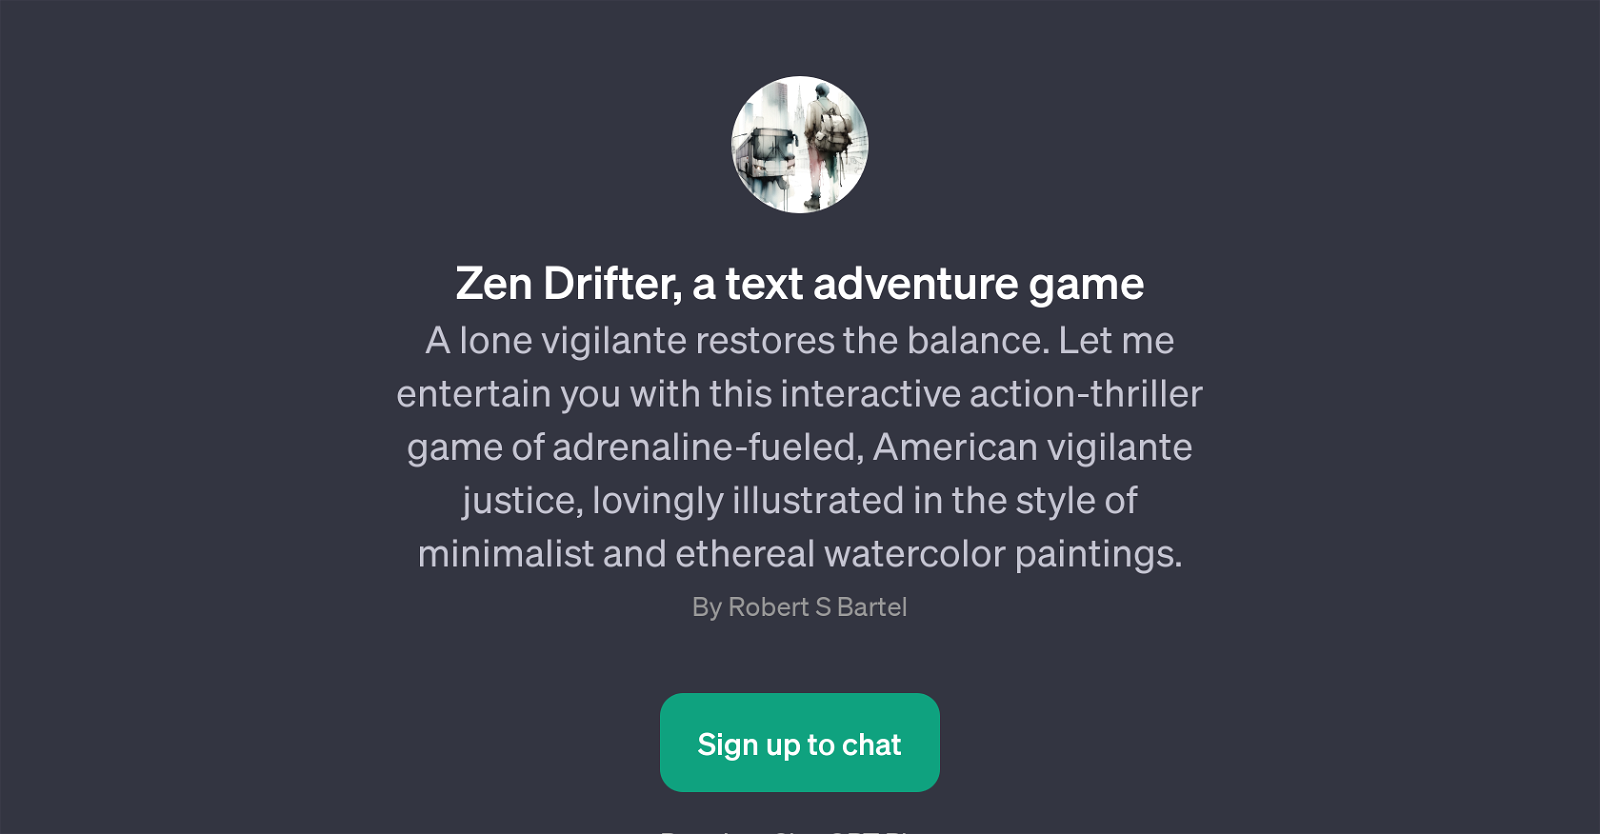 Zen Drifter website